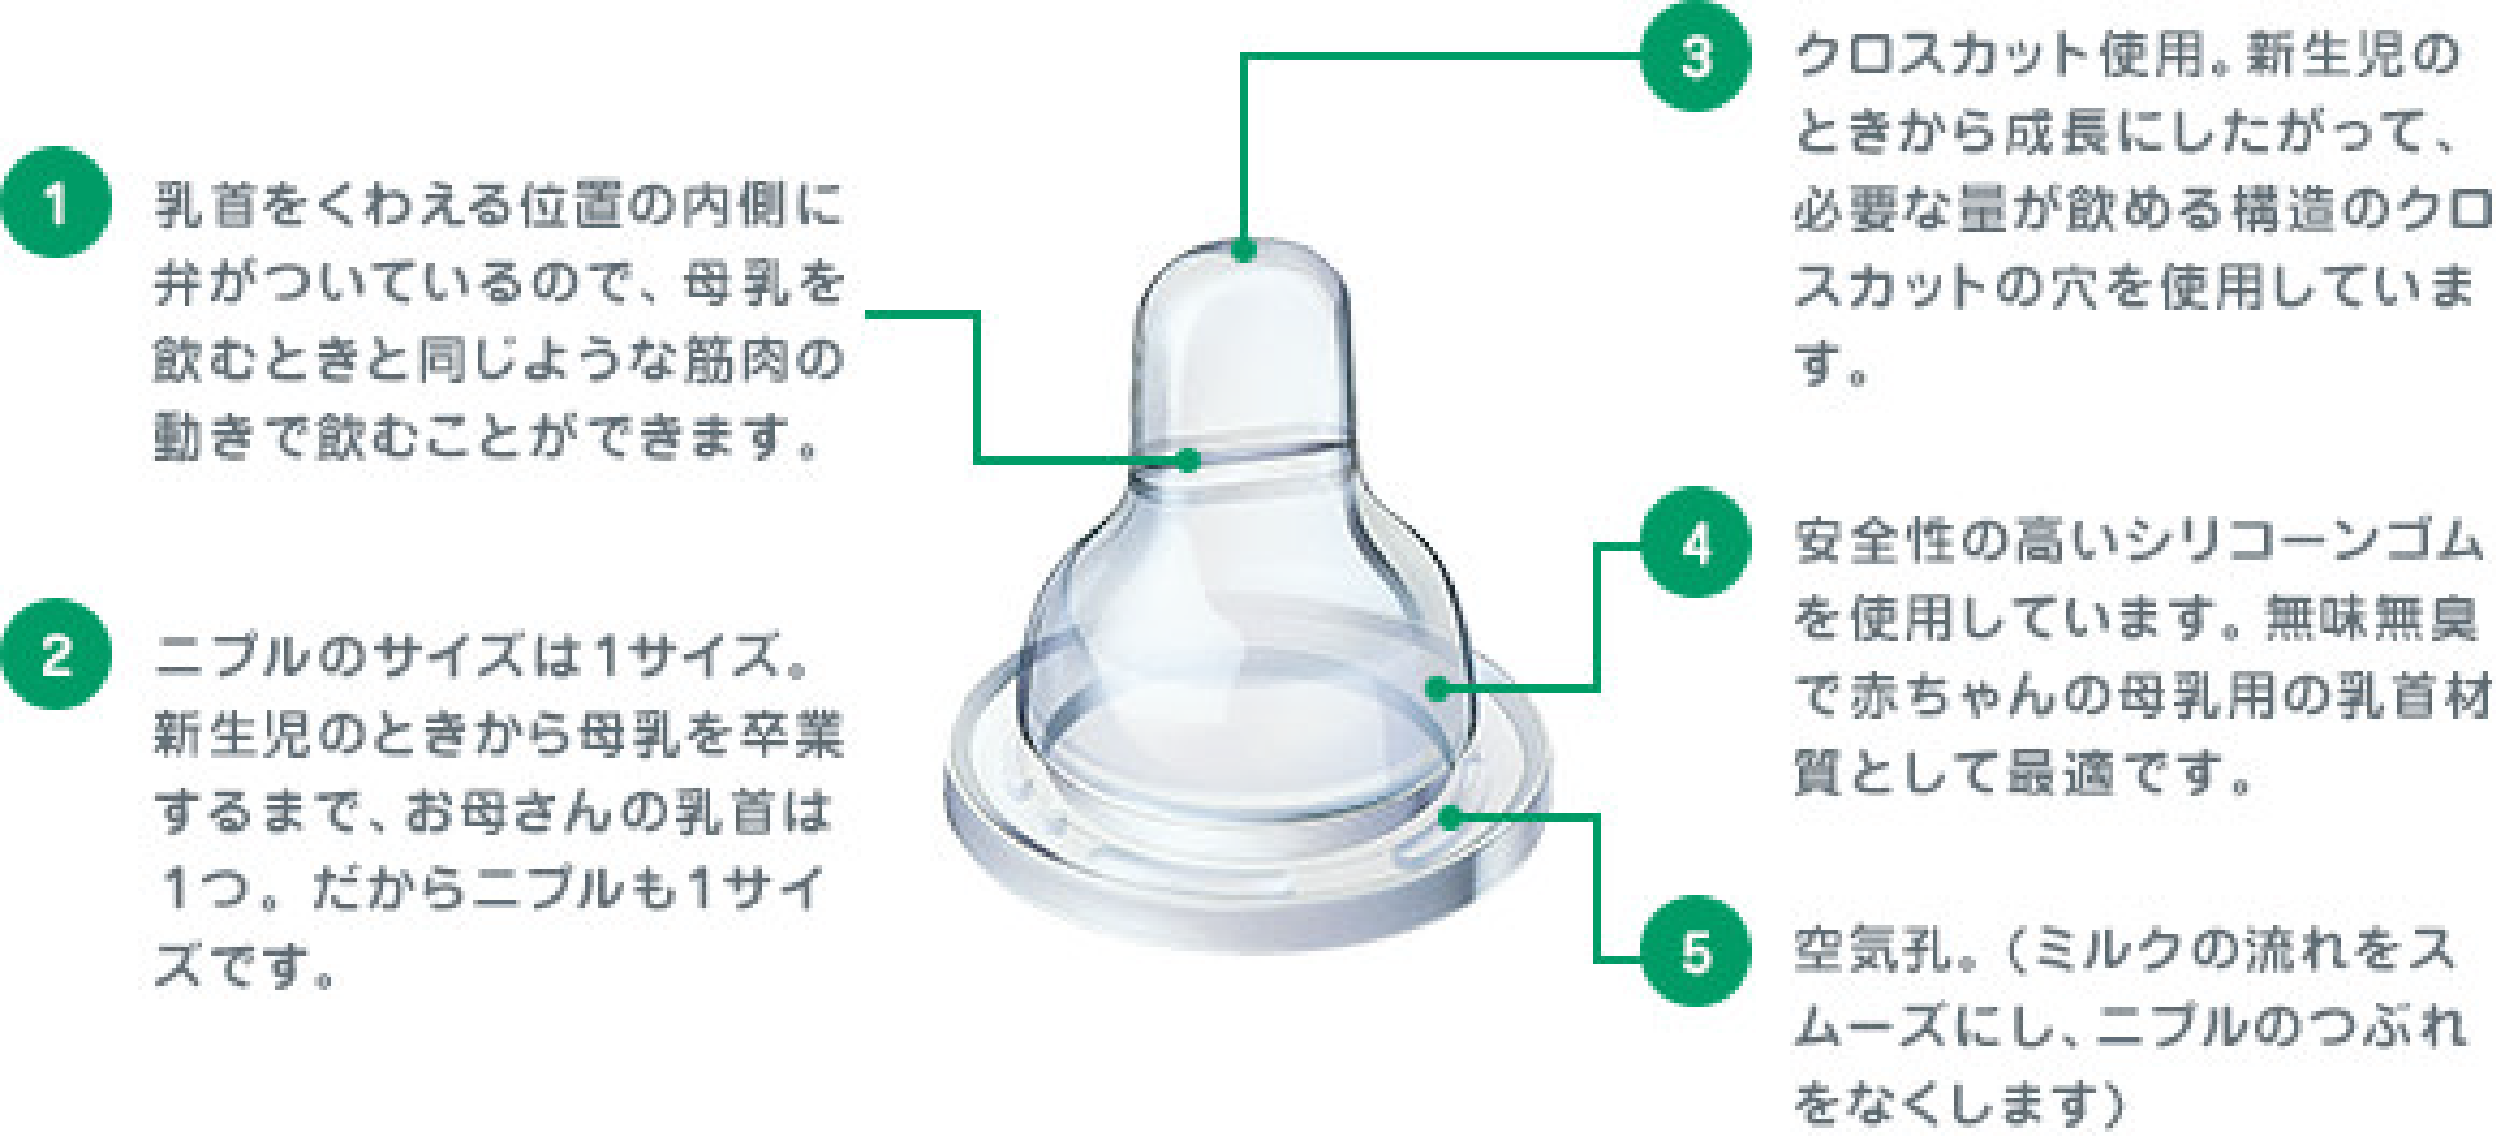 ビーンスターク 哺乳瓶 ニプル乳首つき 150ml - ベビー用食器